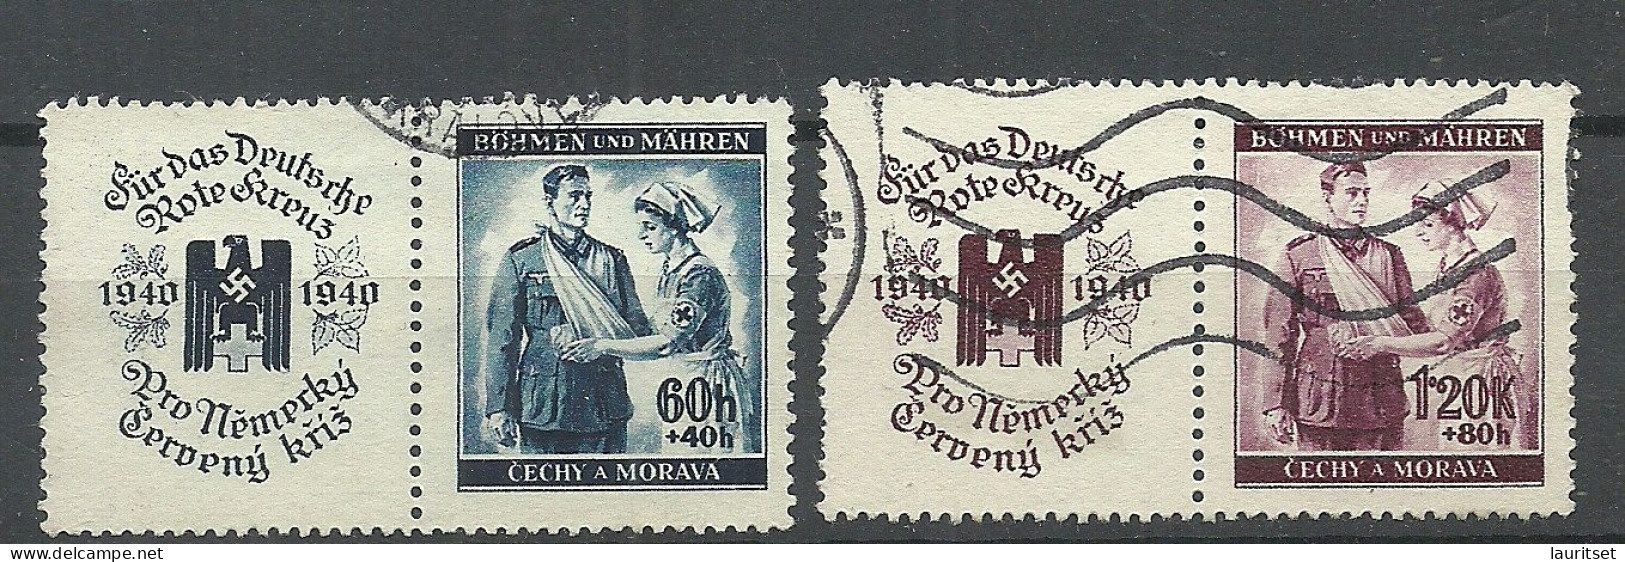 Germany Deutsches Reich 1940 Occupation Böhmen & Mähren Michel 53 - 54 Rotes Kreuz Red Cross - Used Stamps